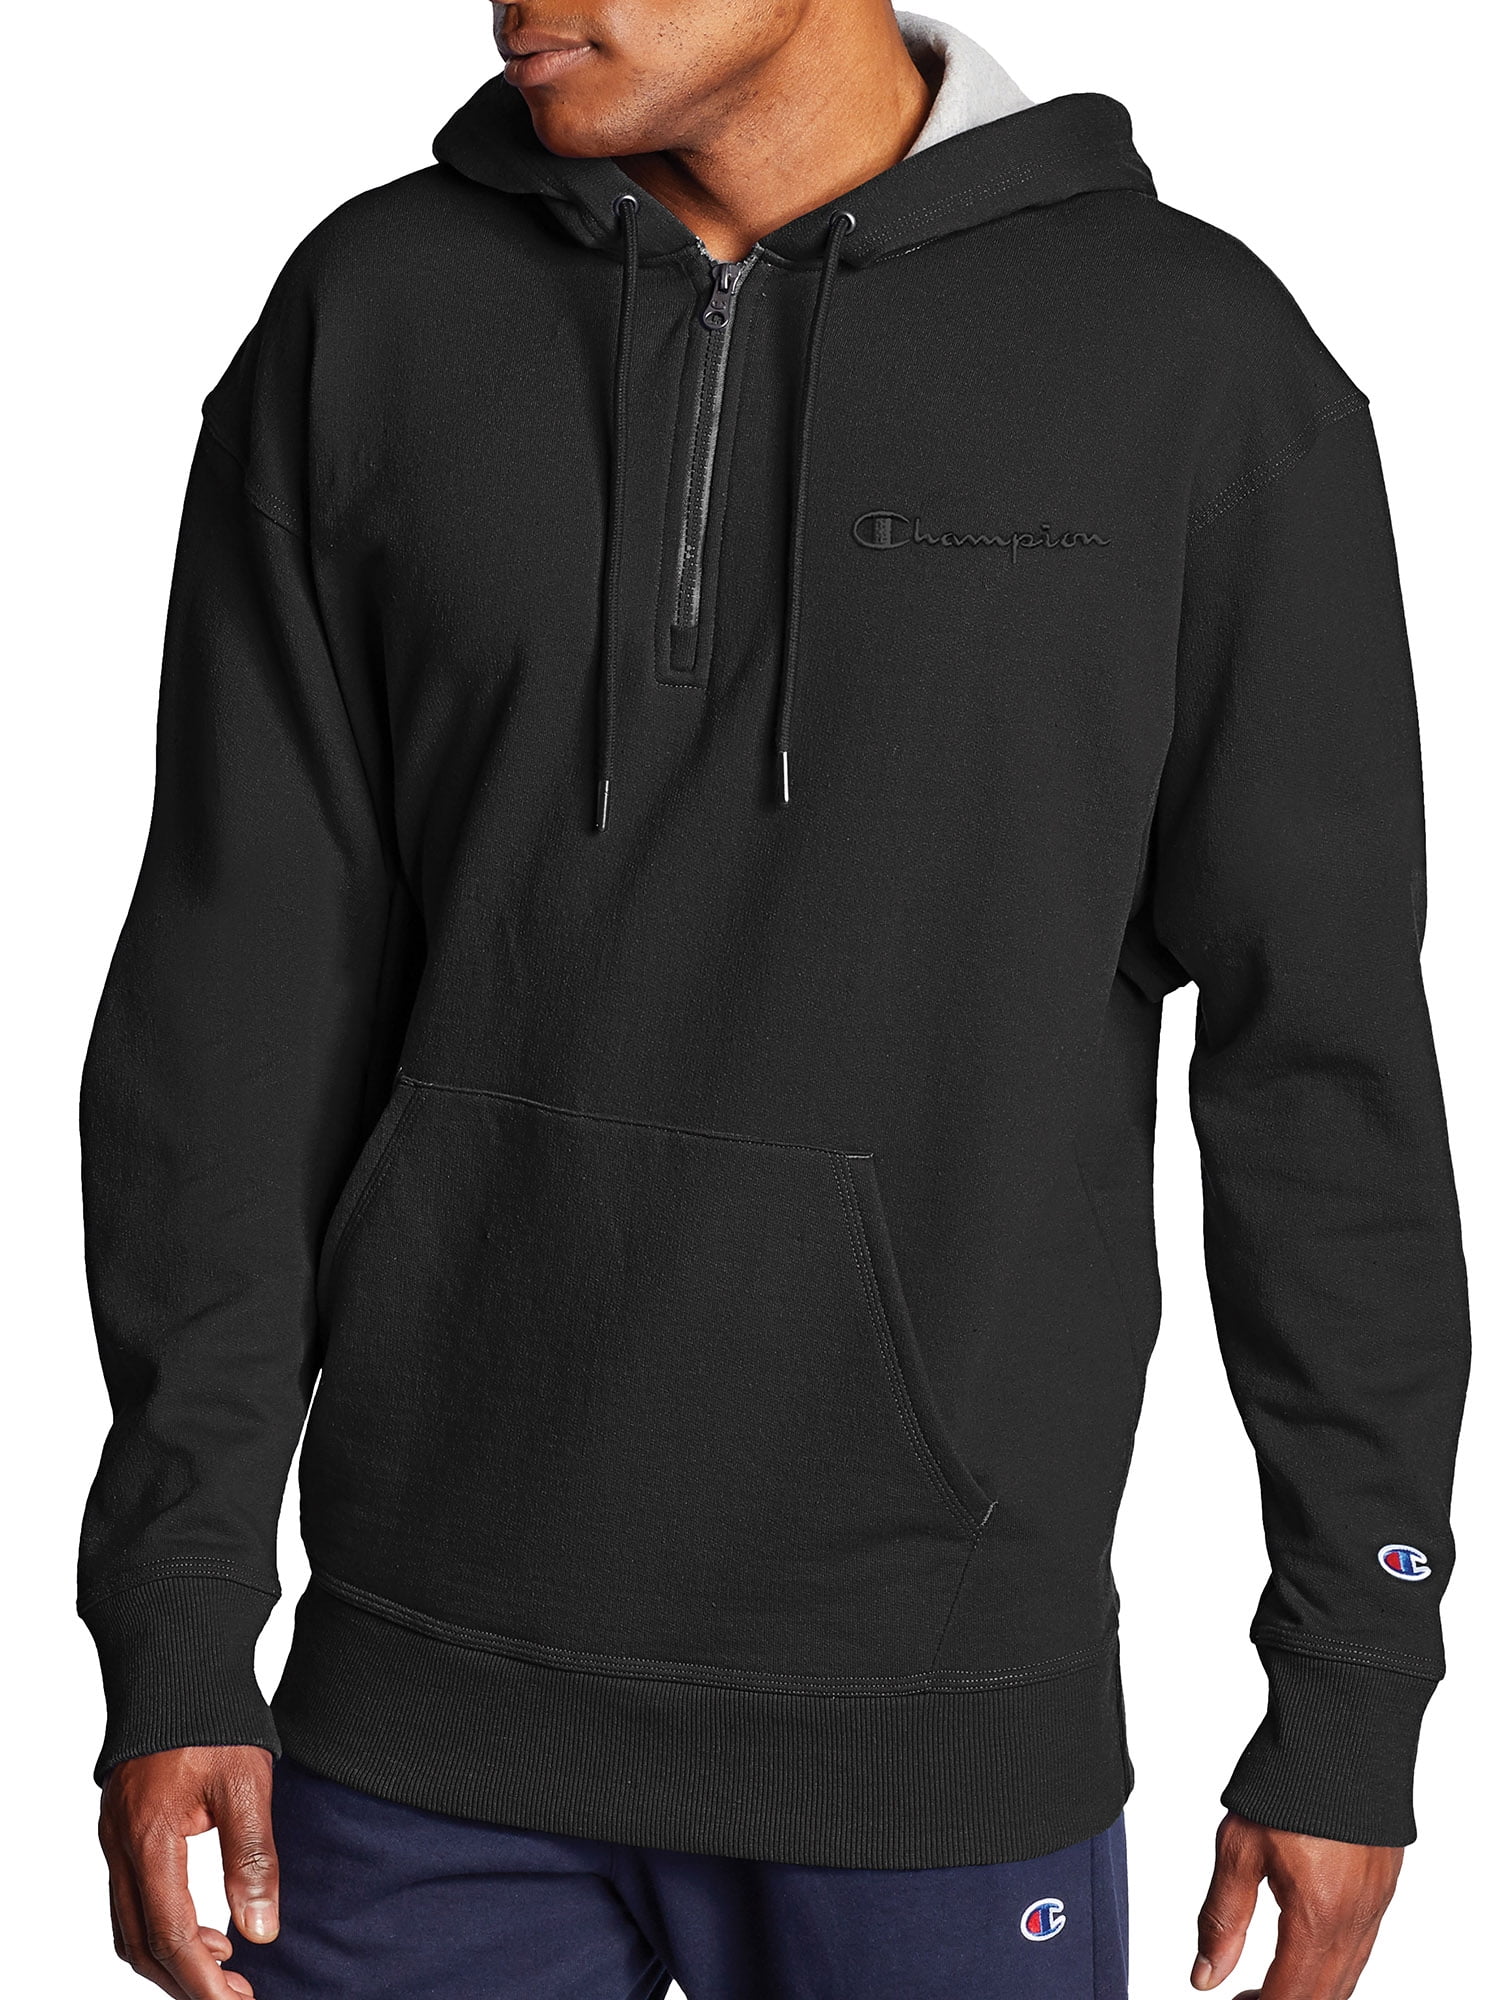 men's black champion hoodie free shipping